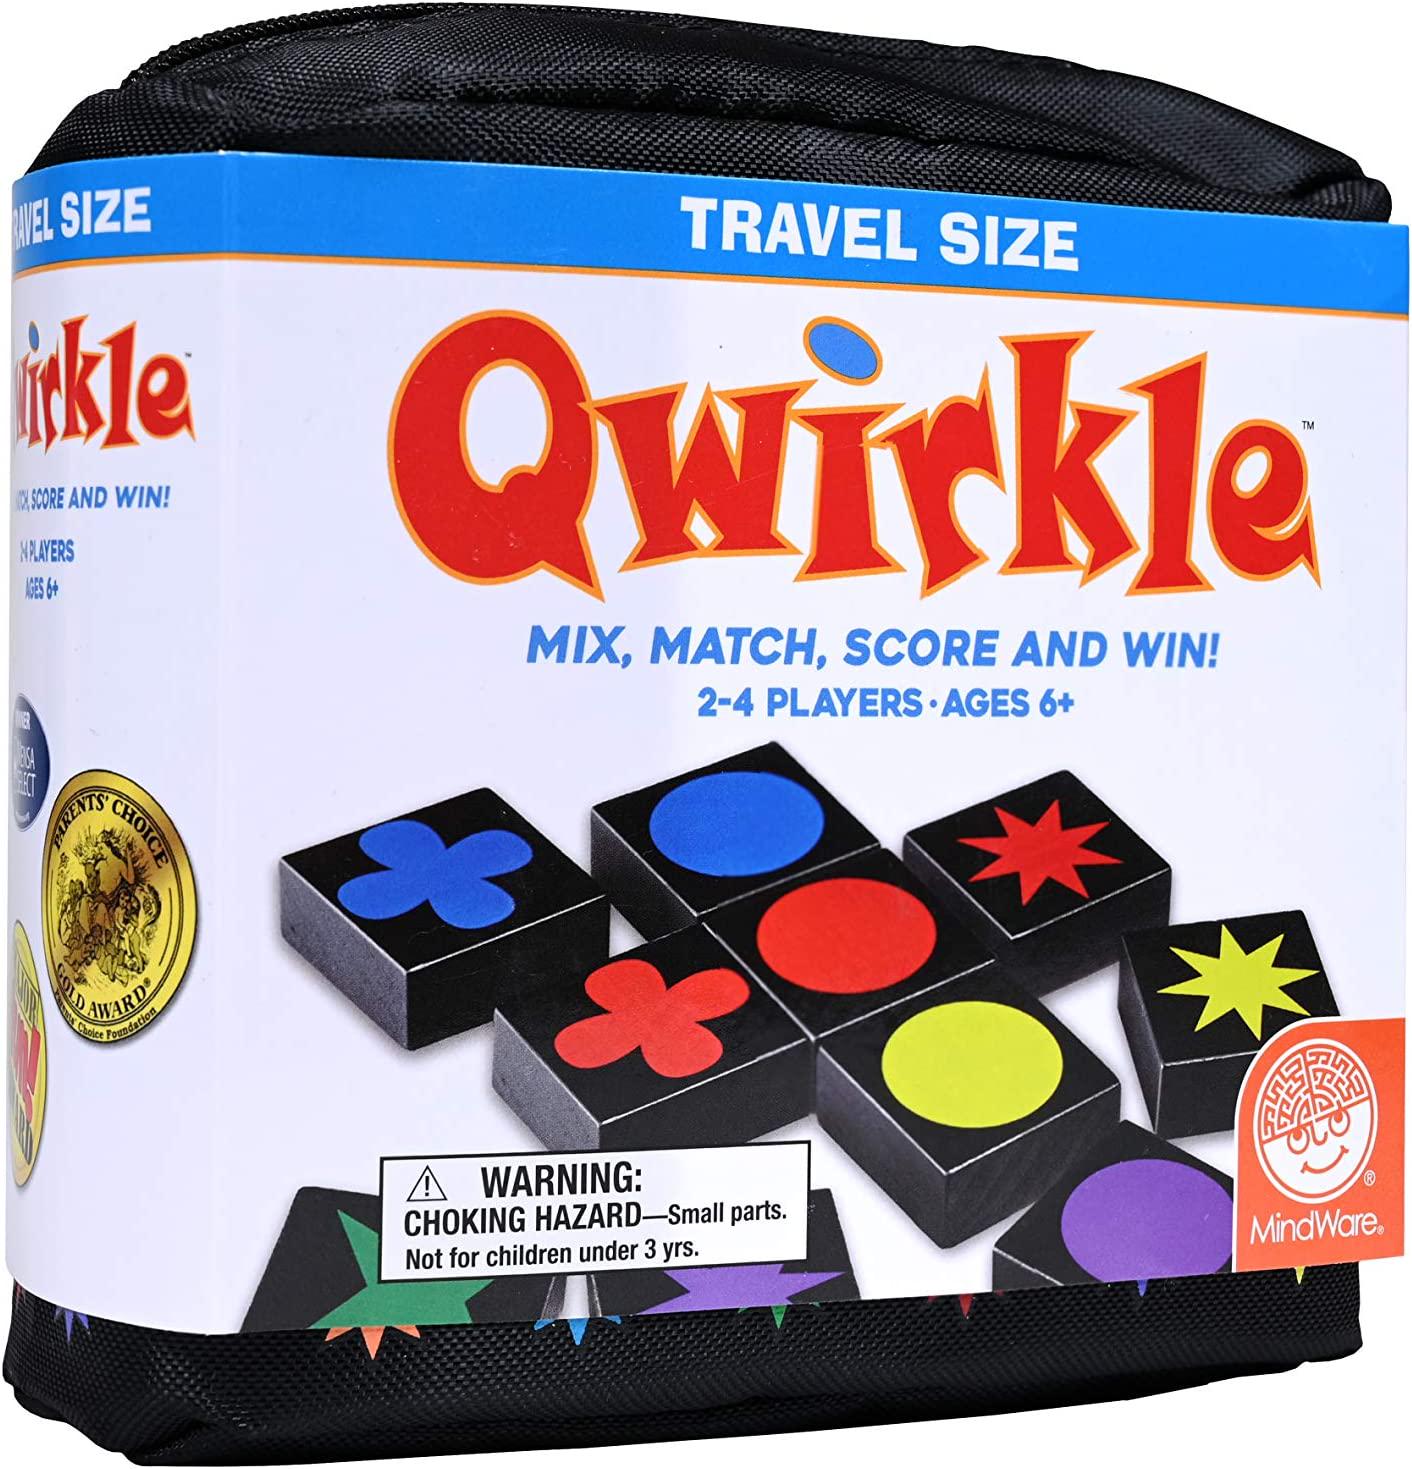 MindWare, MindWare Qwirkle Travel Edition: Mix, Match, Score and Win!